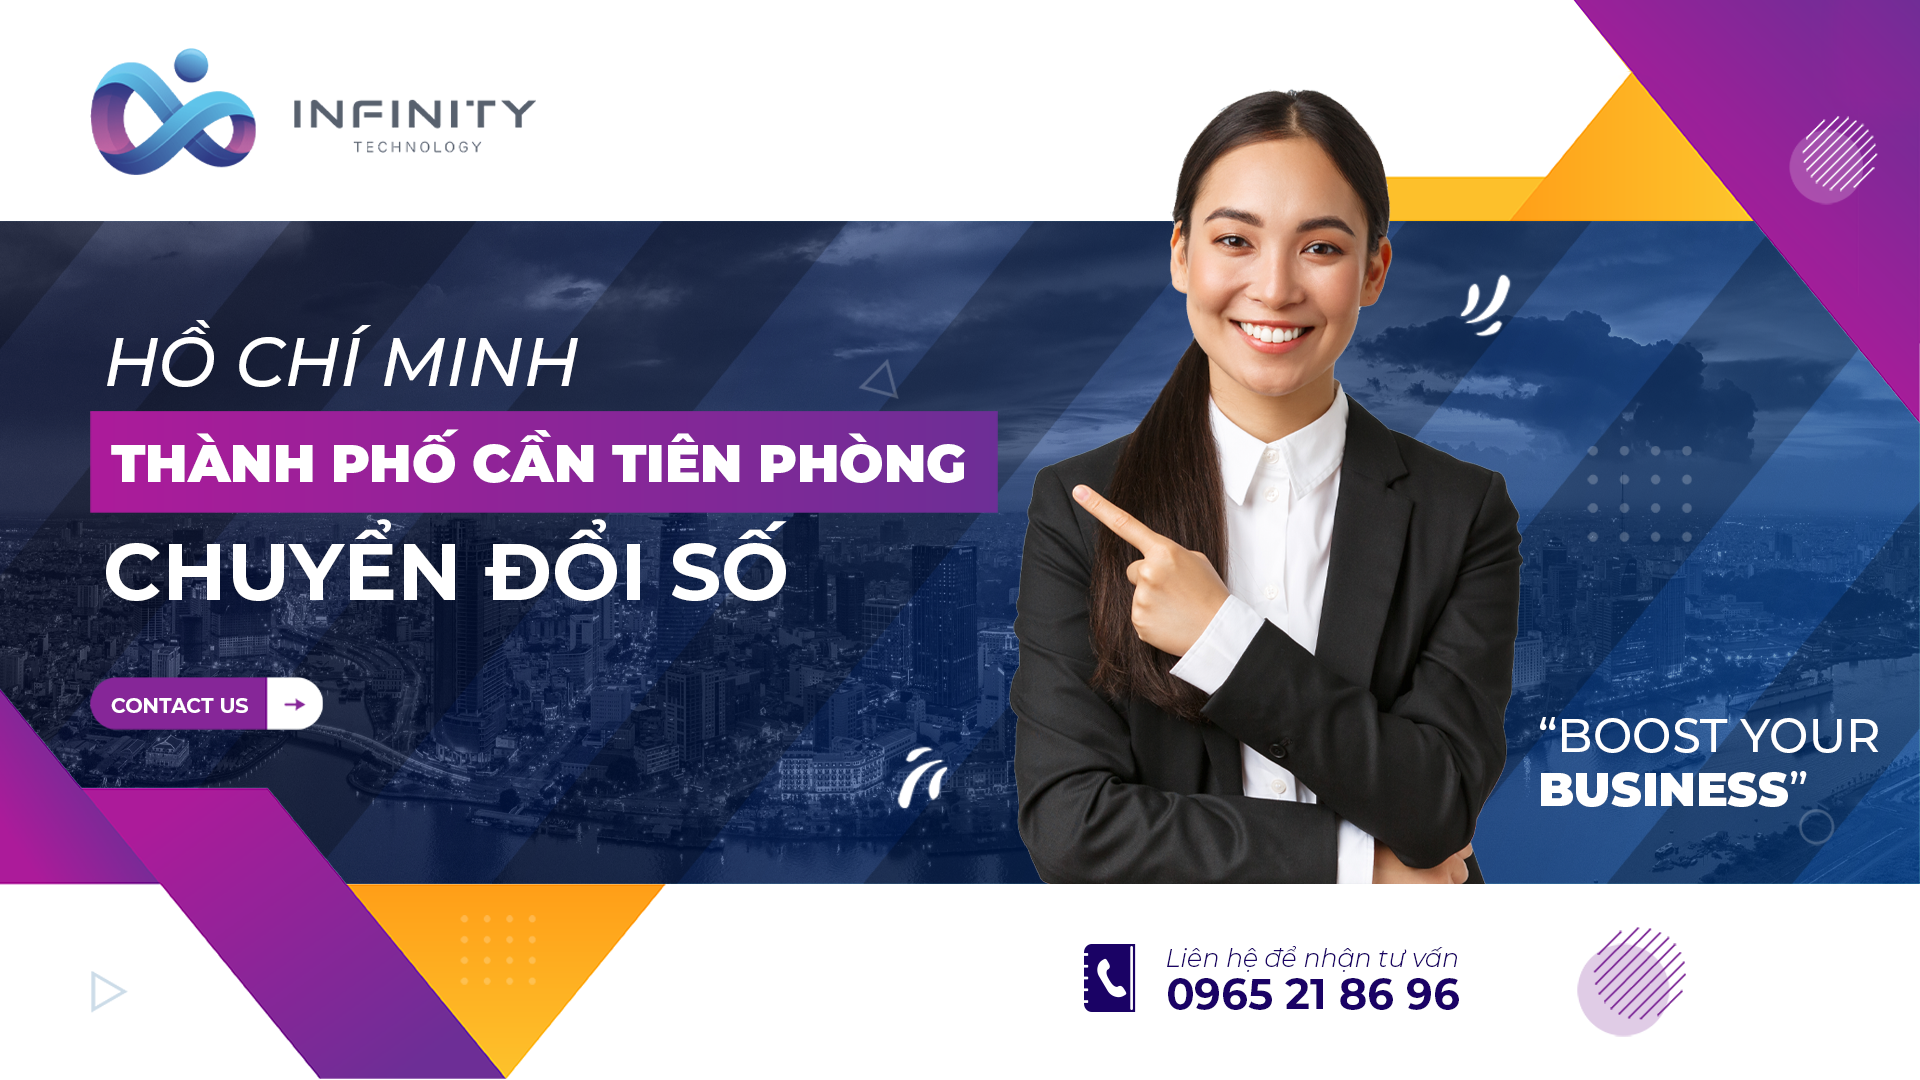 Hồ Chí Minh – thành phố cần tiên phòng chuyển đổi số